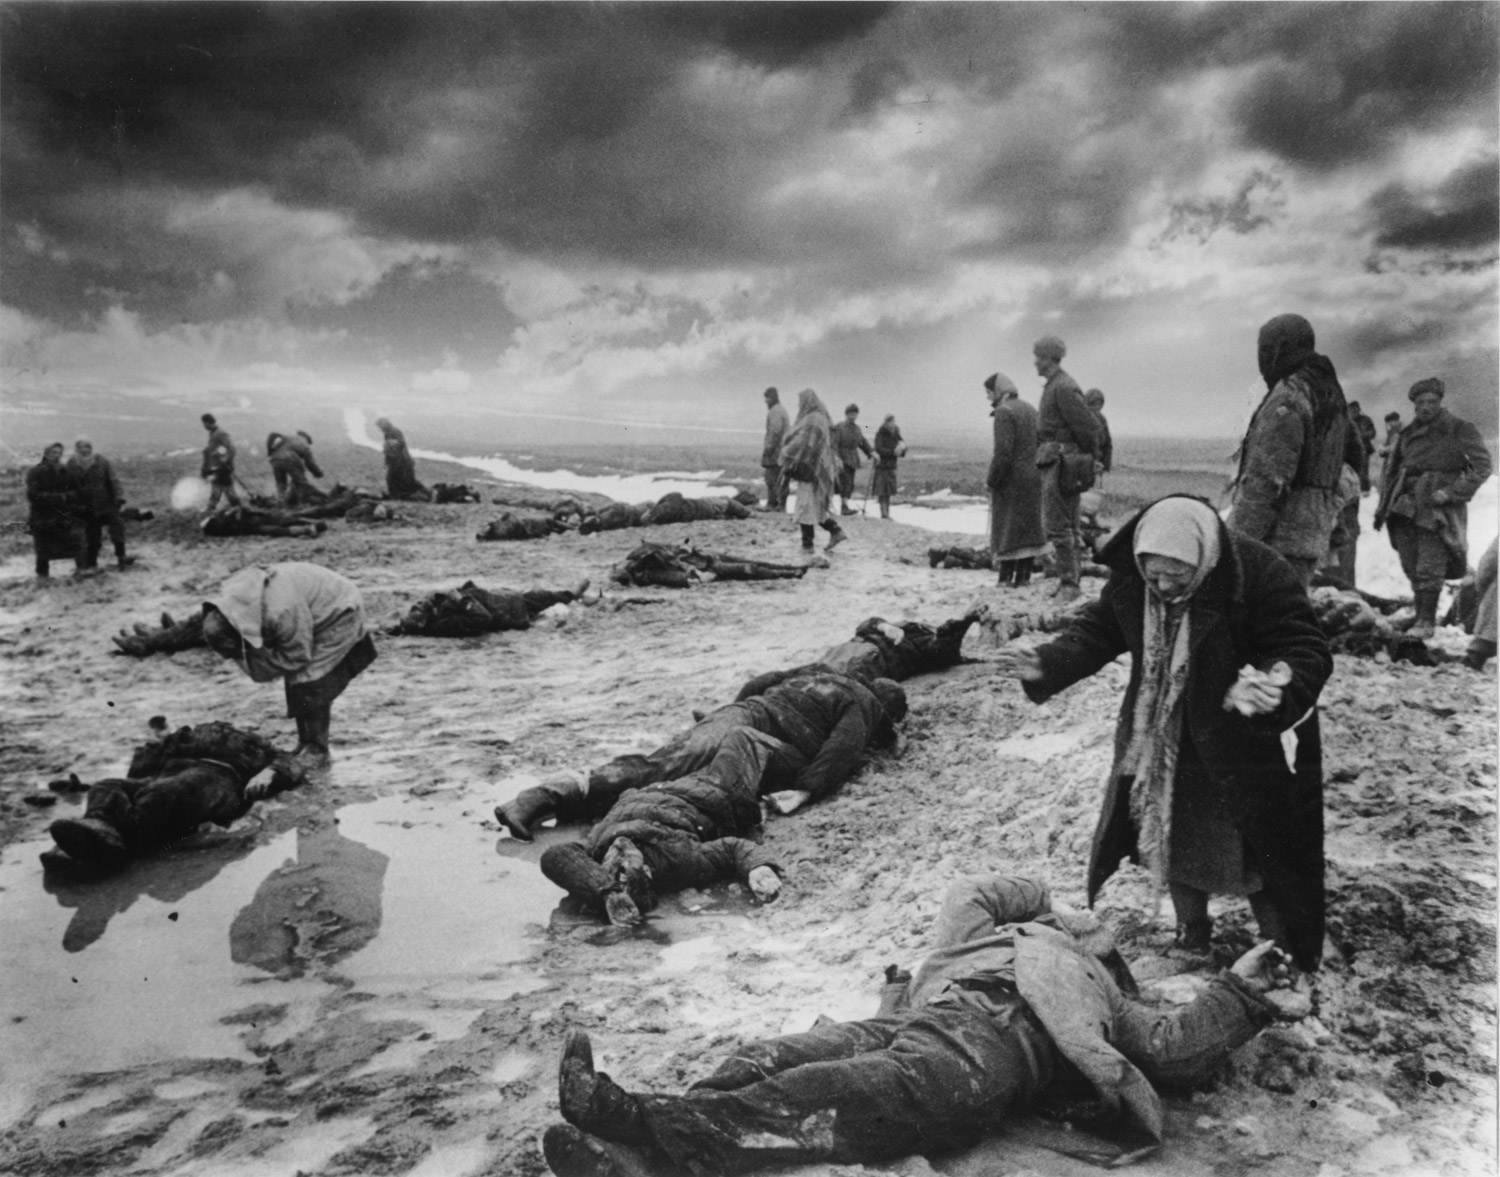 Image: Grief, Kerch, Crimea, January 1942